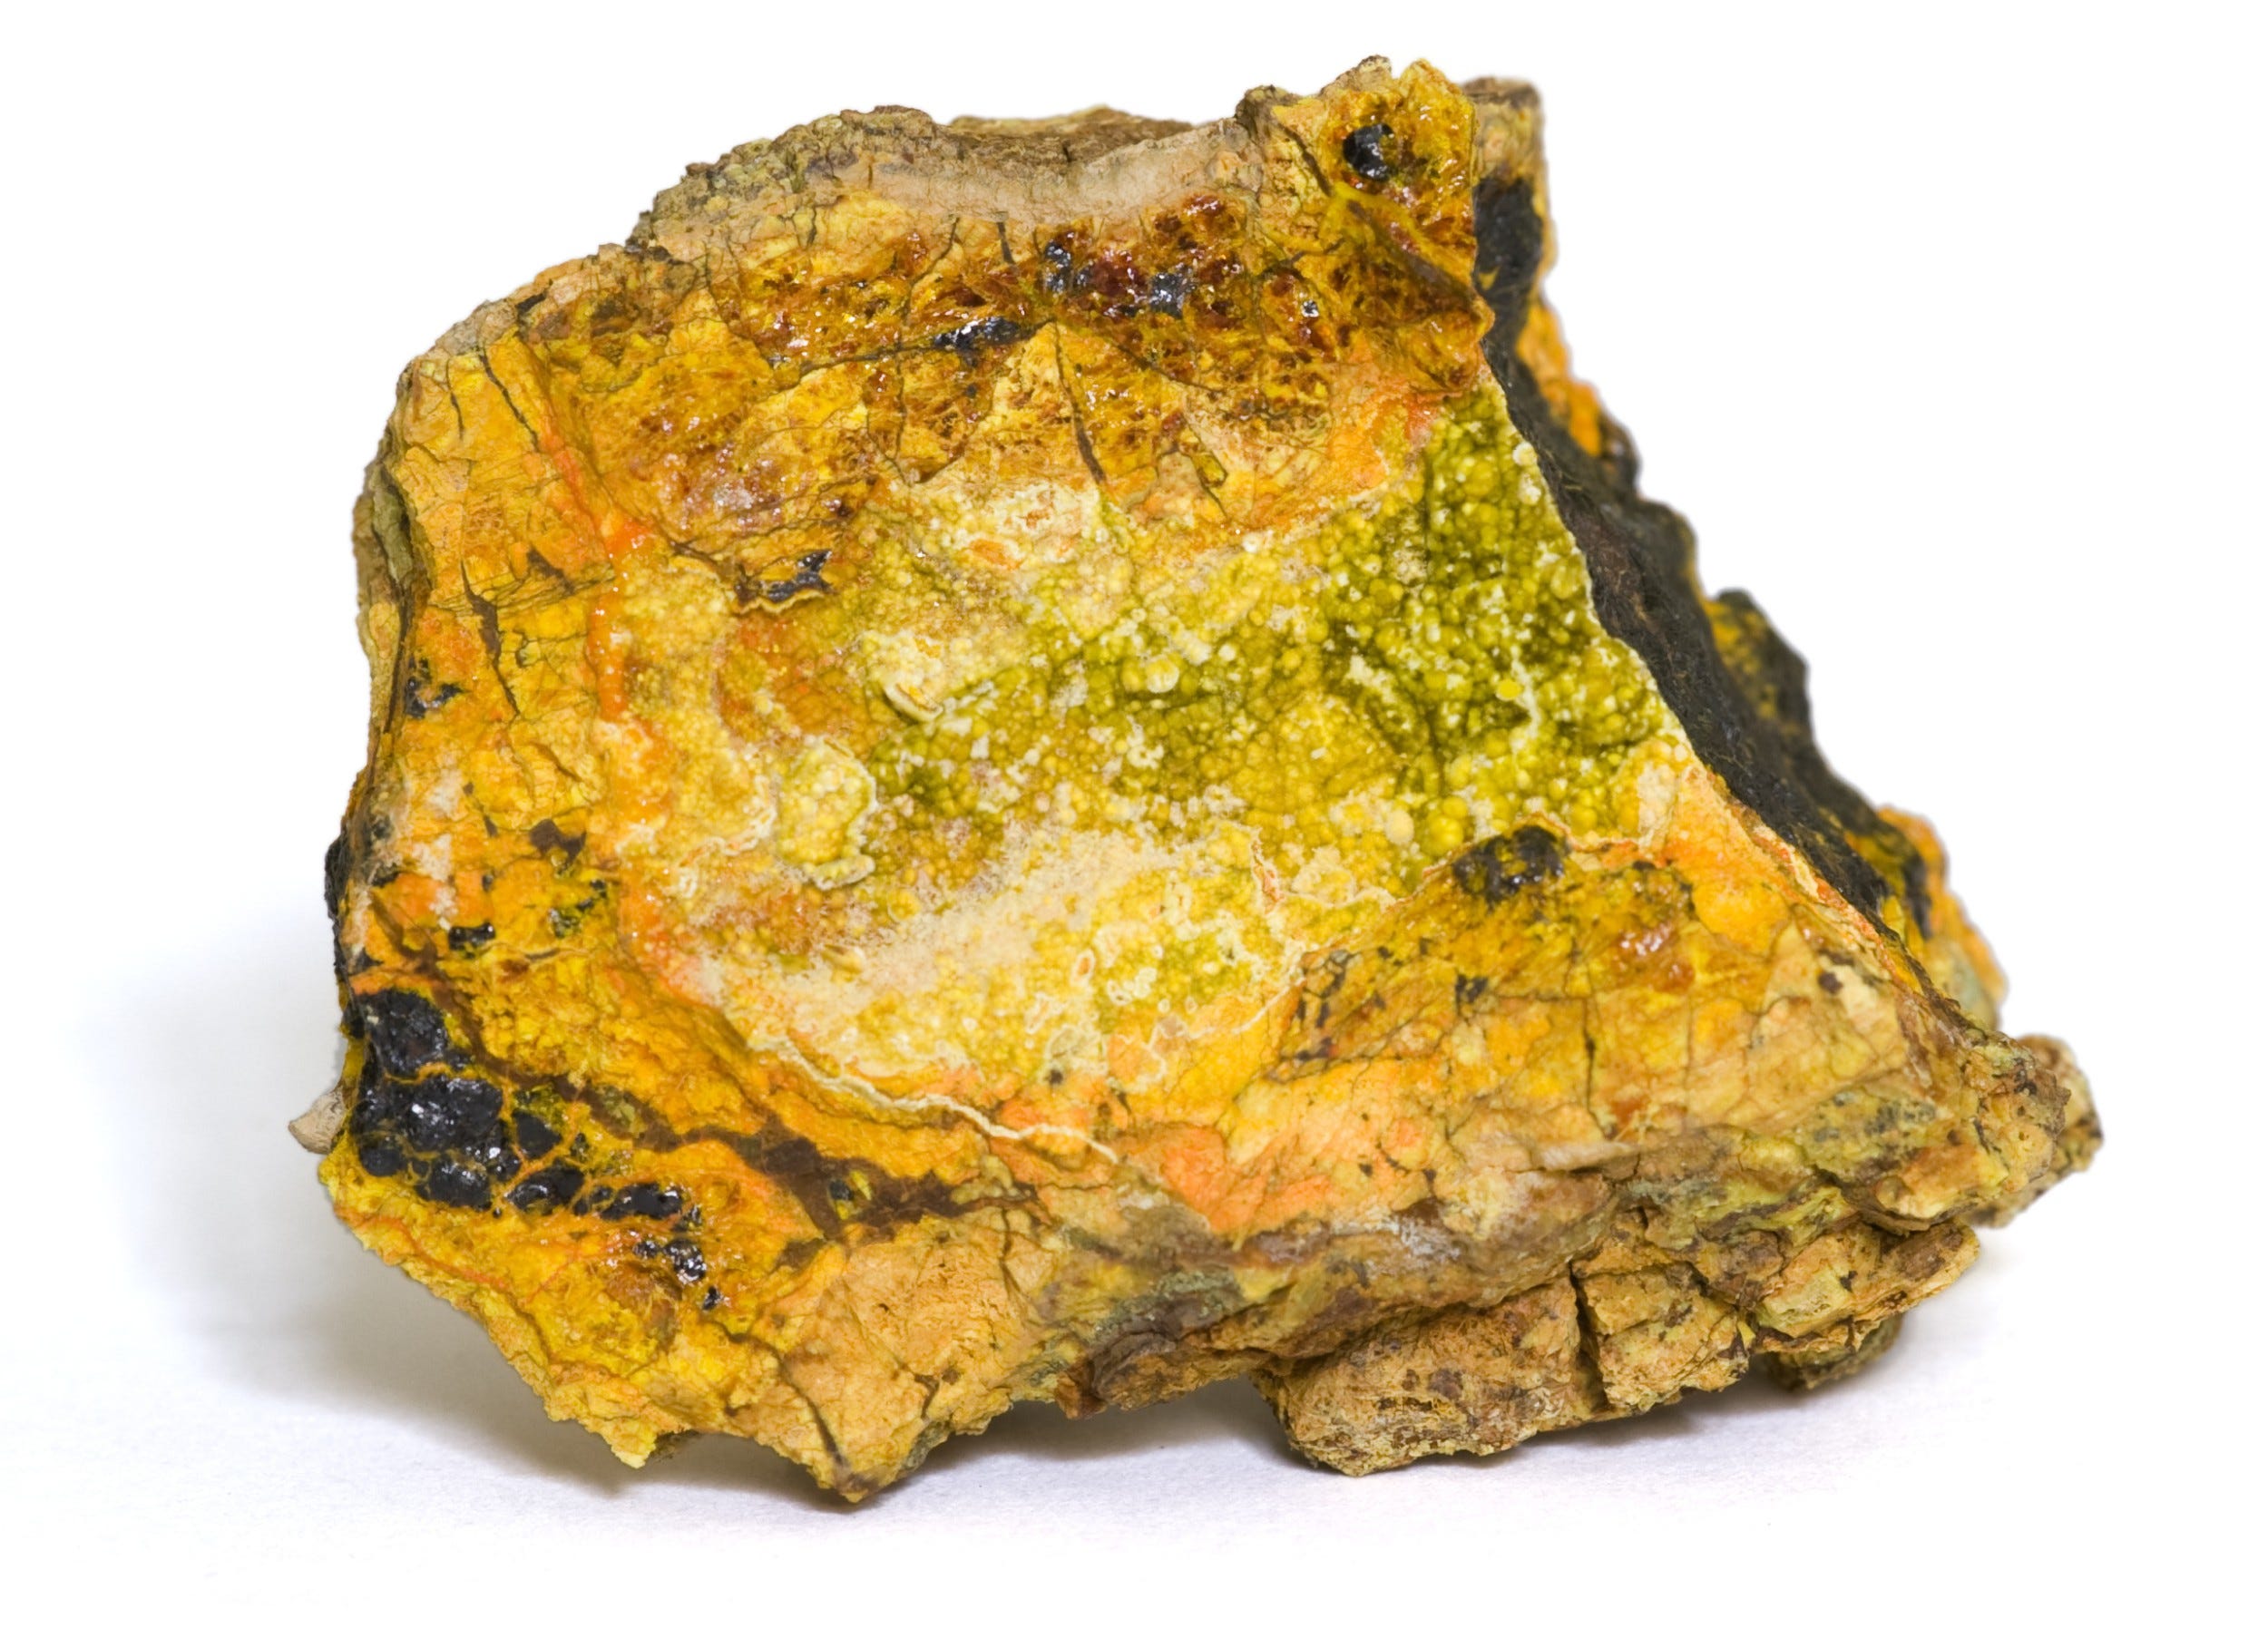 Wölsendorfita, um mineral raro que contém urânio em sua composição. Foto: Marcel Clemens. Fonte: [InfoEscola](https://www.infoescola.com/quimica/enriquecimento-de-uranio/).